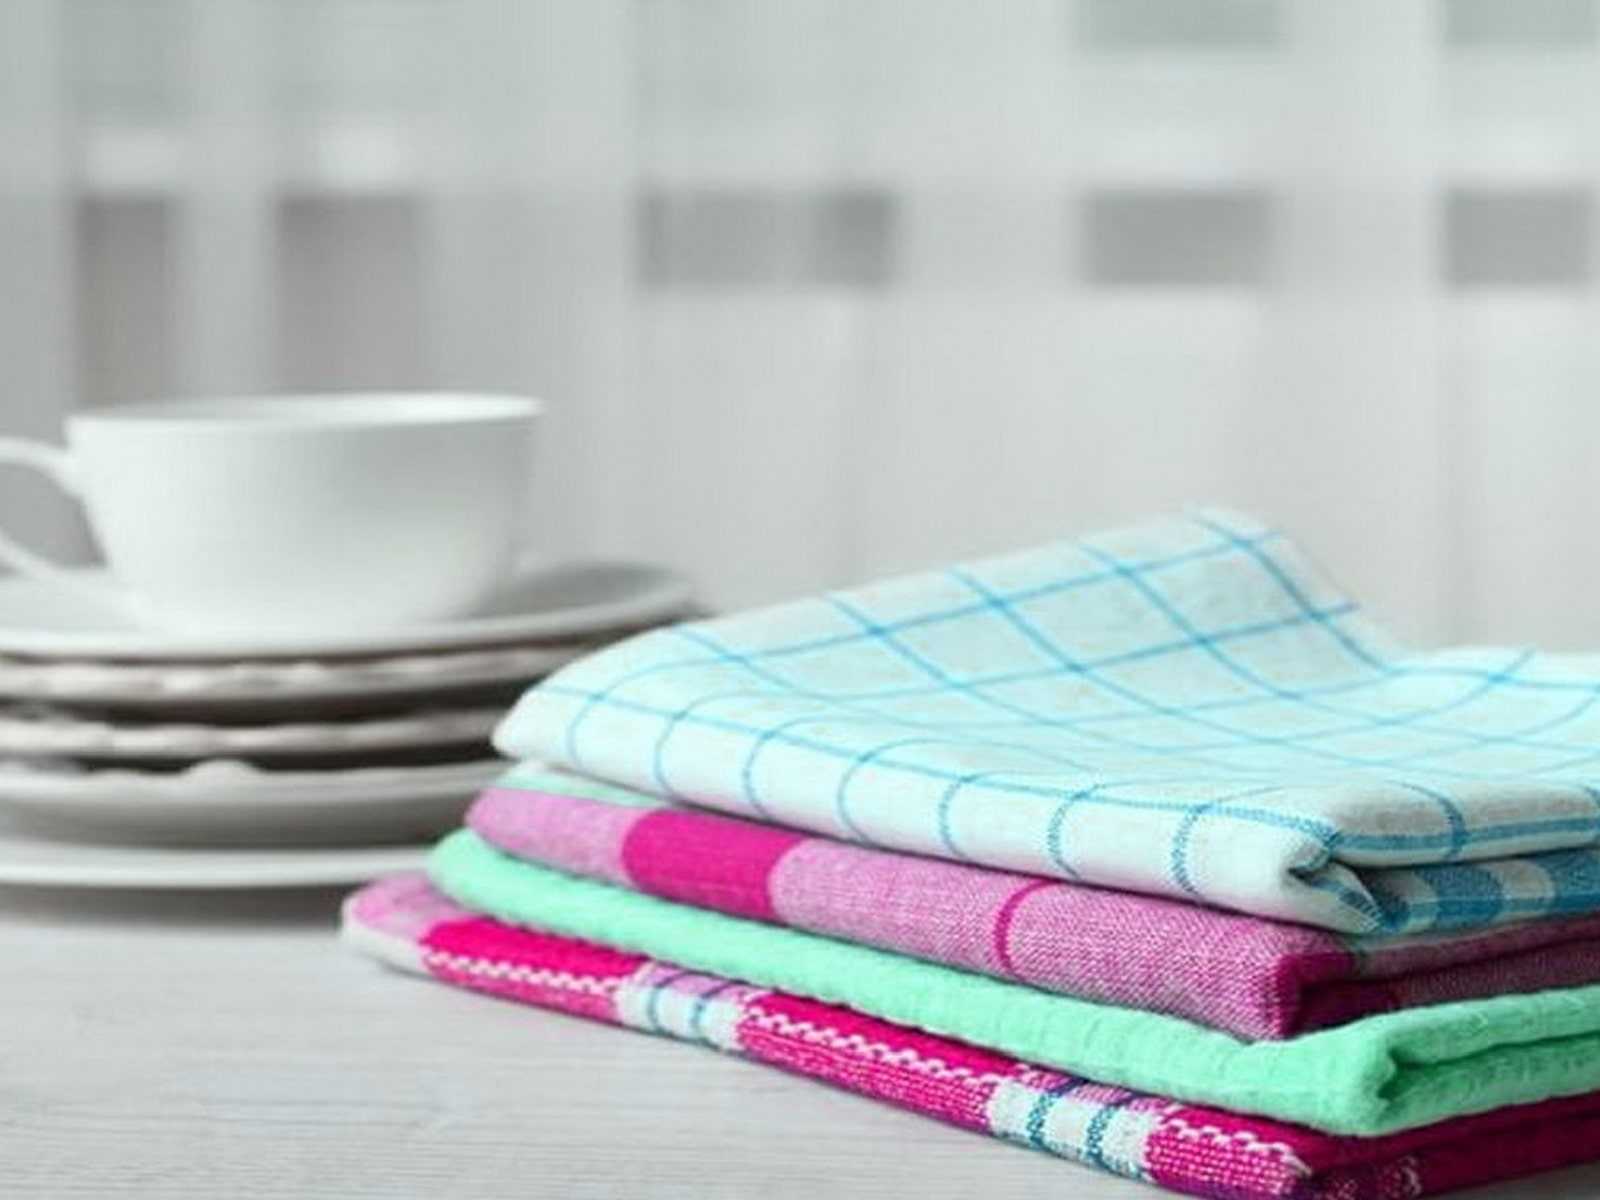 Как стирать махровые полотенца, как сделать полотенца мягкими и пушистыми, как вернуть полотенцам мягкость